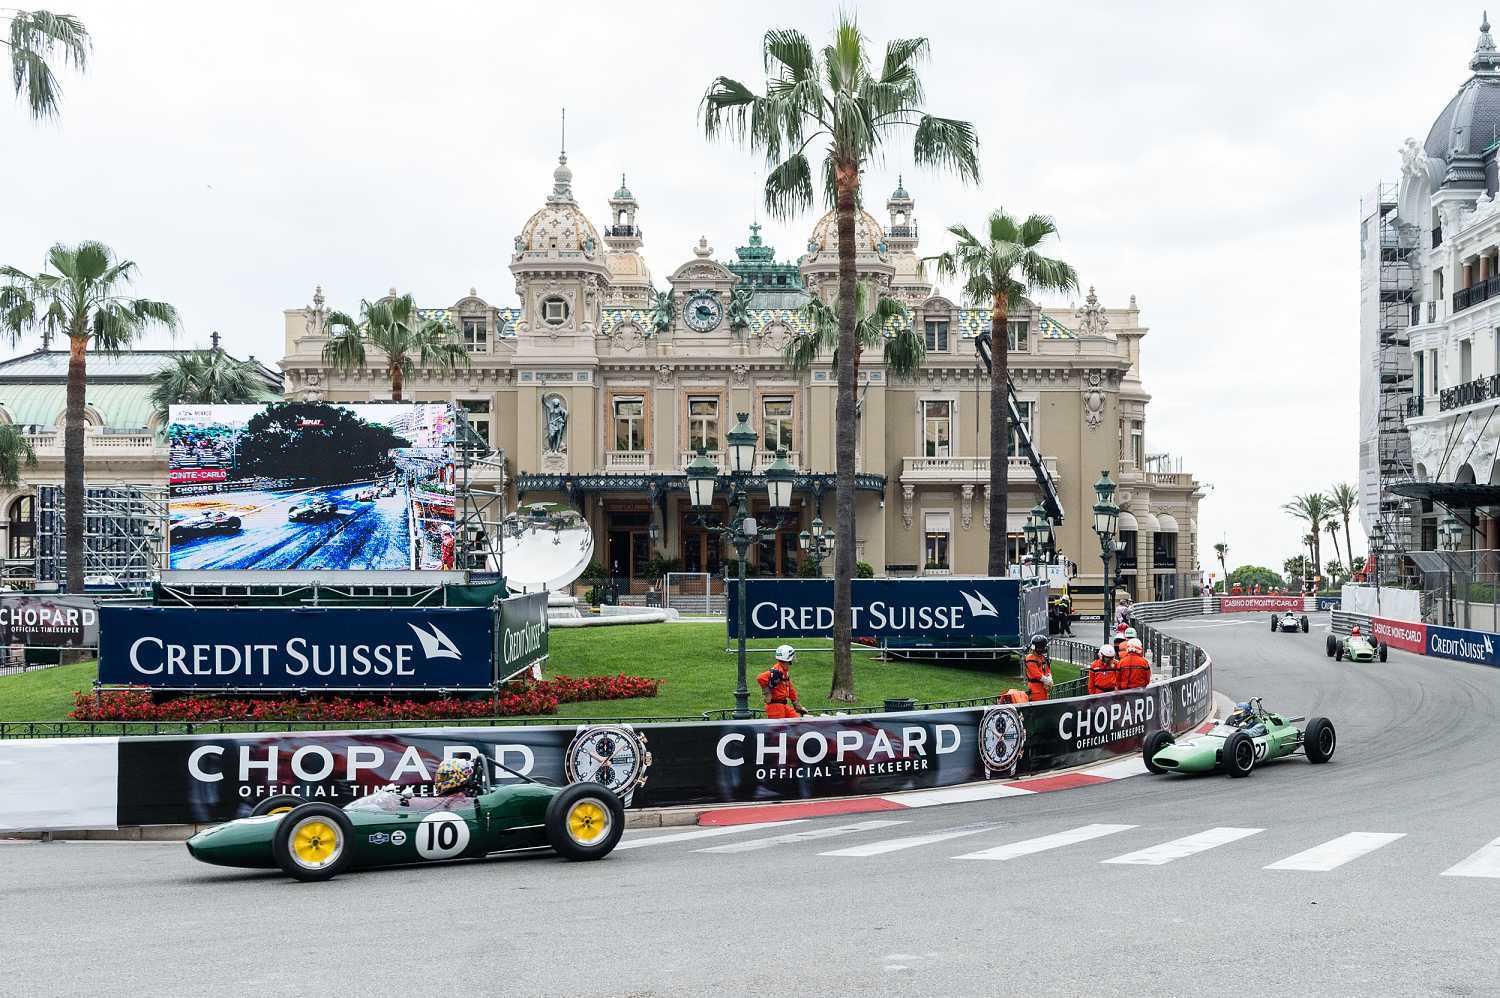 Chopard oficiální časomíra Grand Prix de Monaco 1 | Baselworld 2019